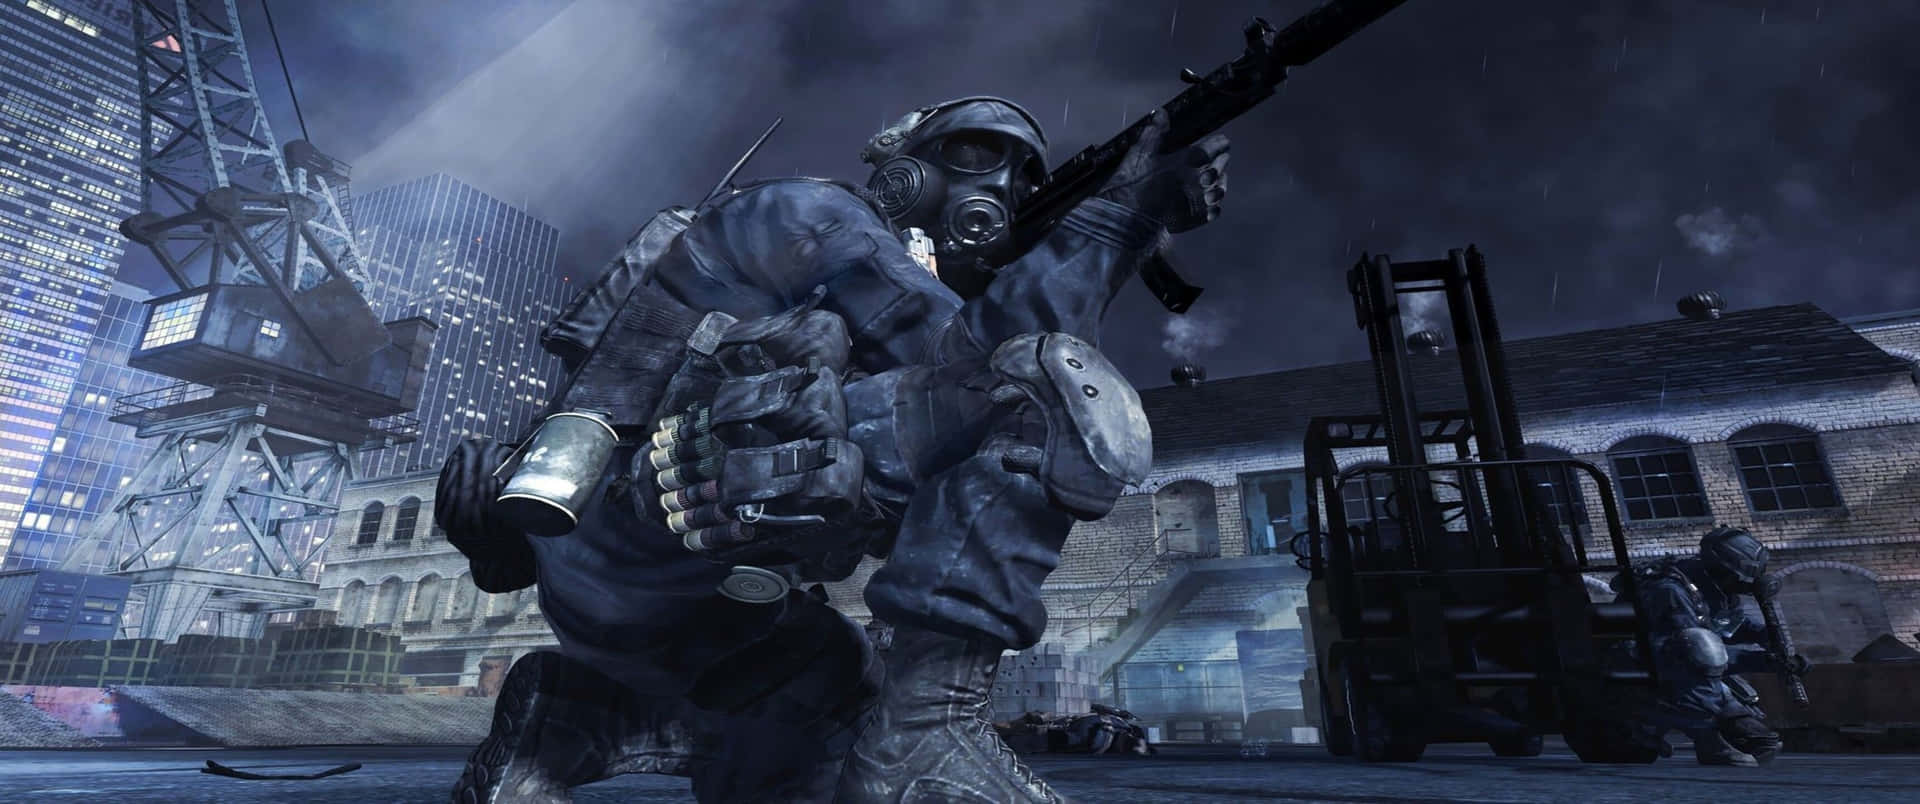 Soldatoinginocchiato Sfondo Call Of Duty Modern Warfare A 3440x1440p.